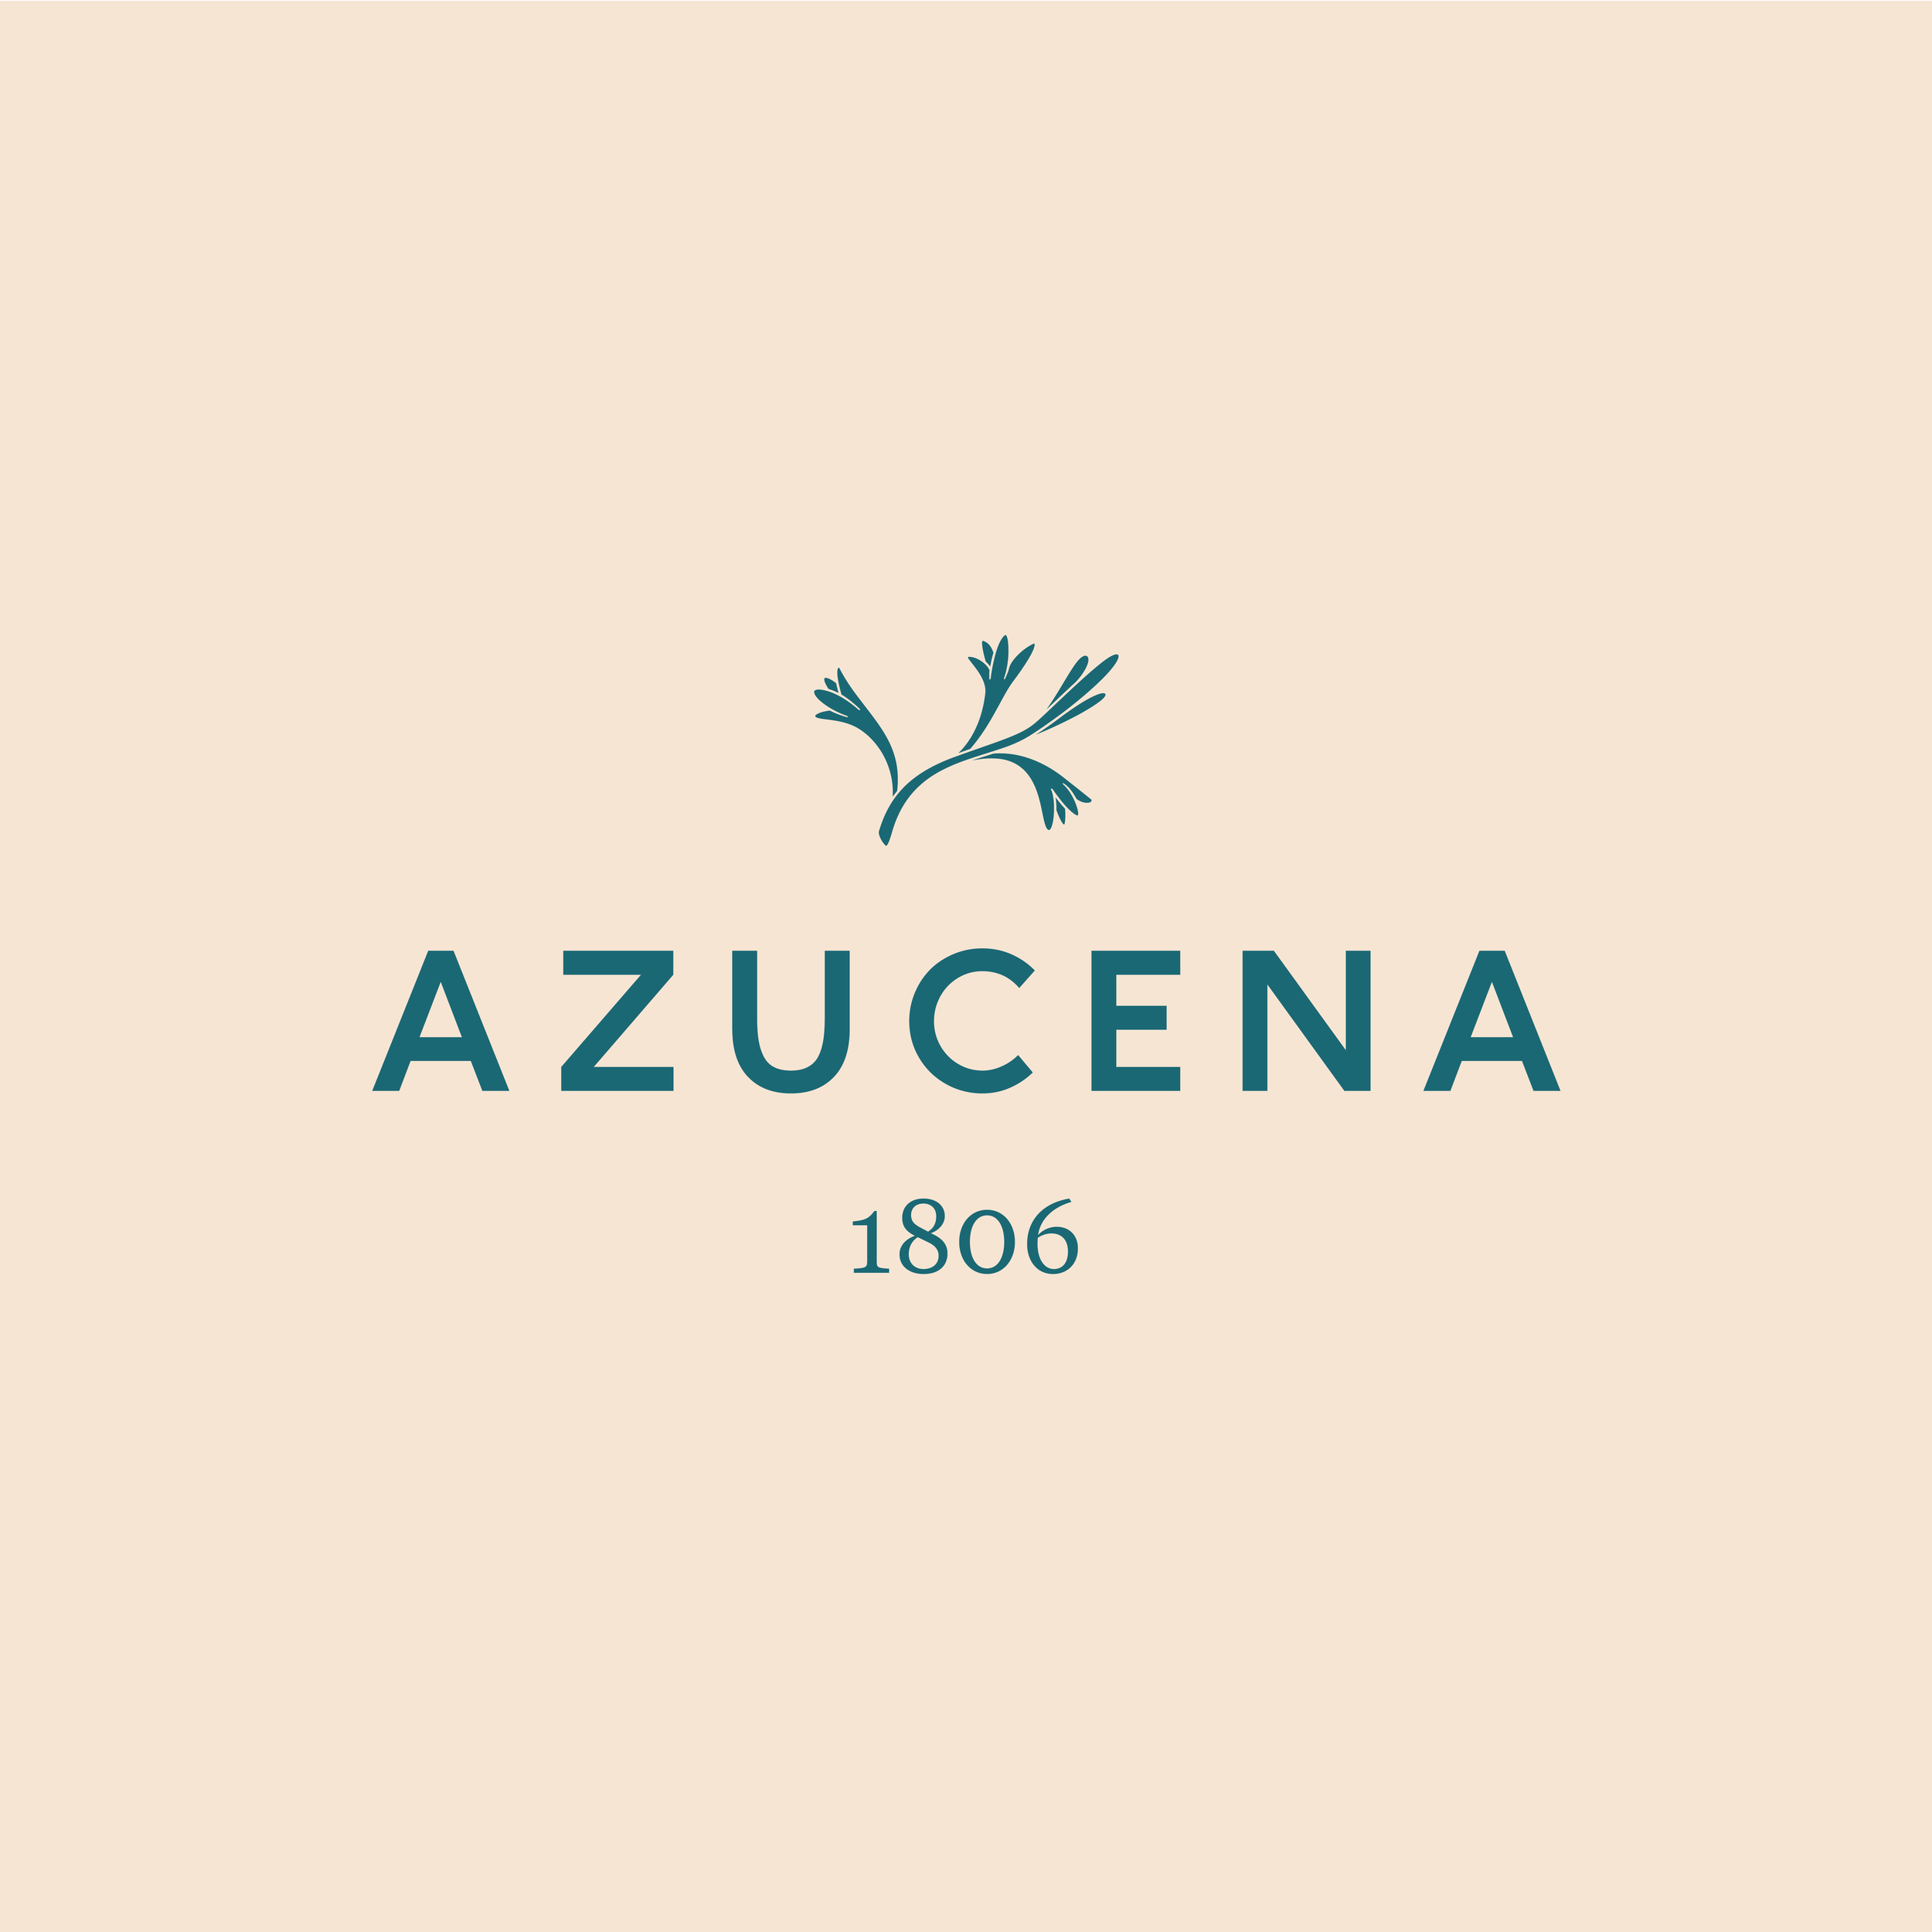 Azucena fonda contemporánea puertorriqueña — AZUCENA